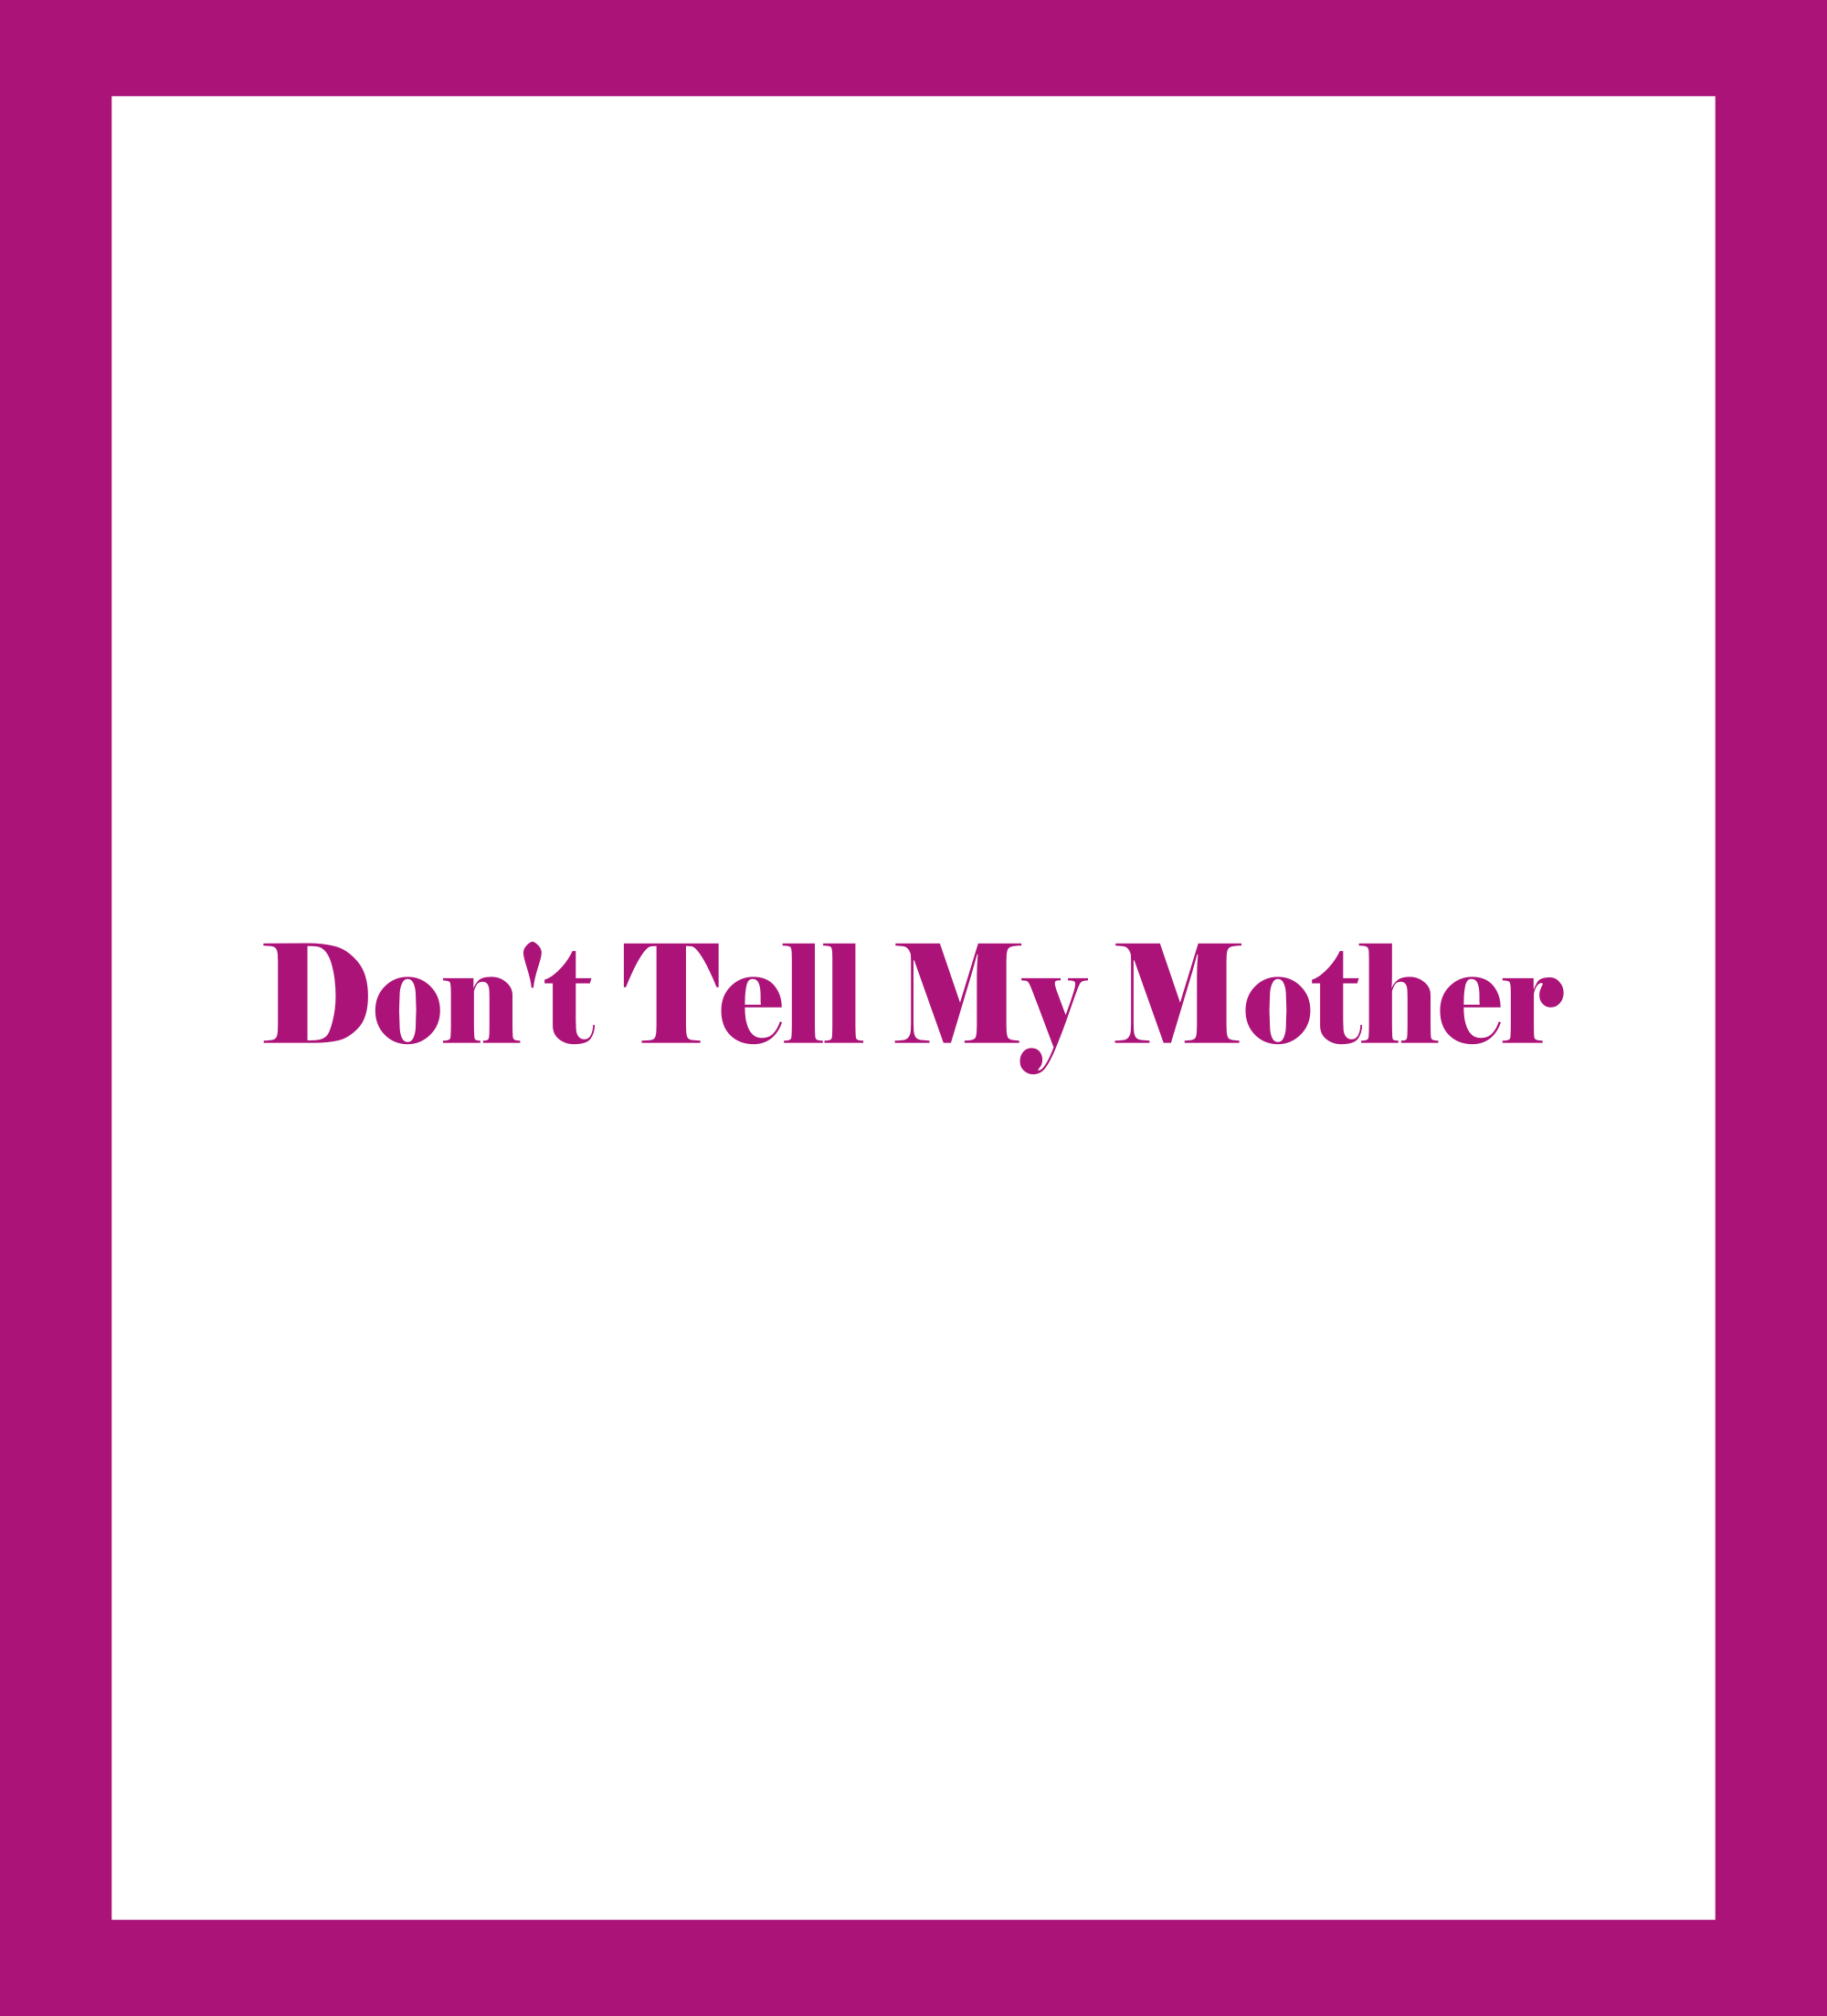 Caratula de Don't Tell My Mother (No le digas a mi madre) 